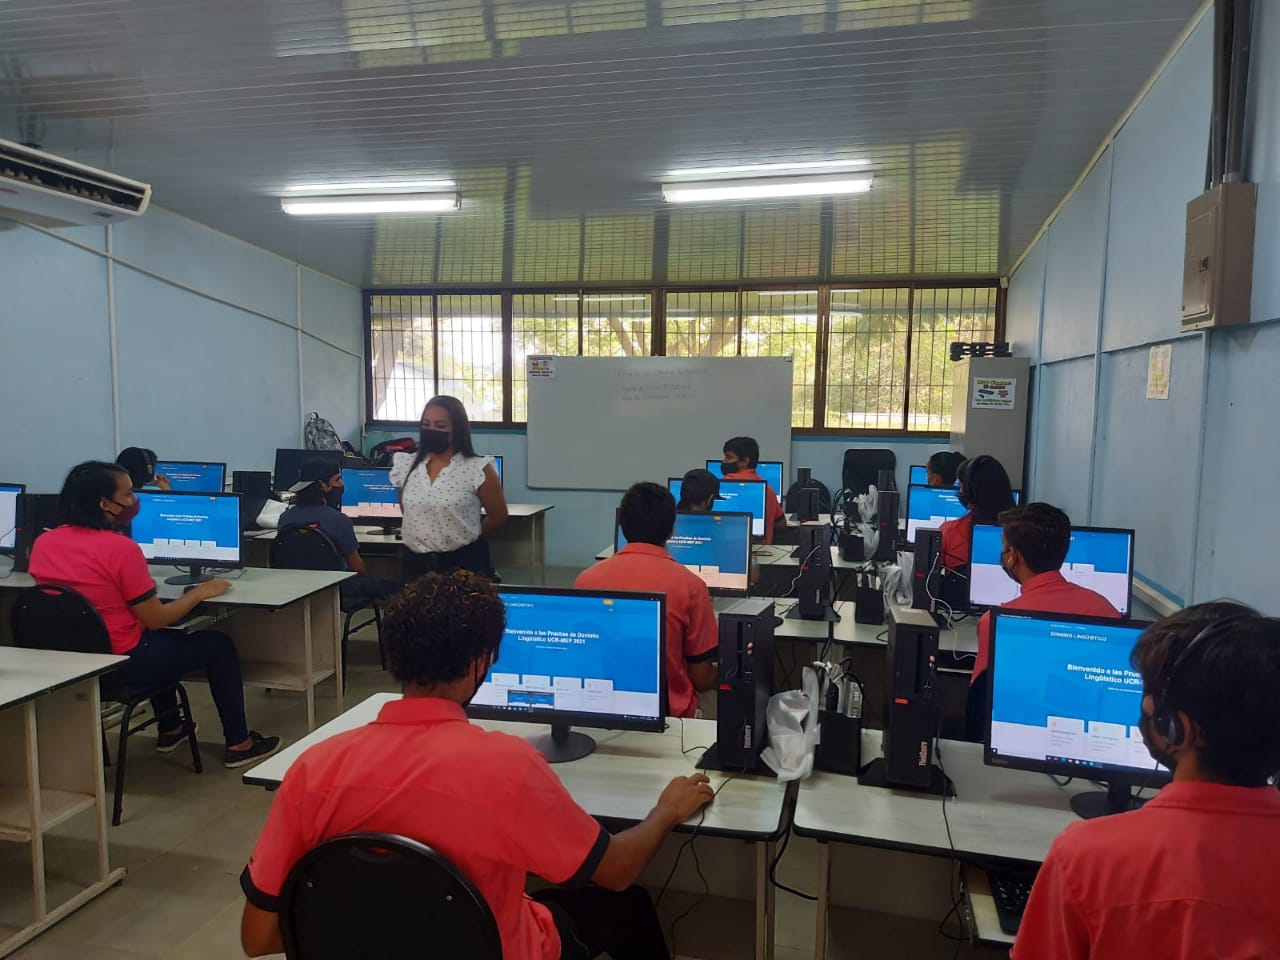 Estudiantes haciendo el examen de inglés en la computadora